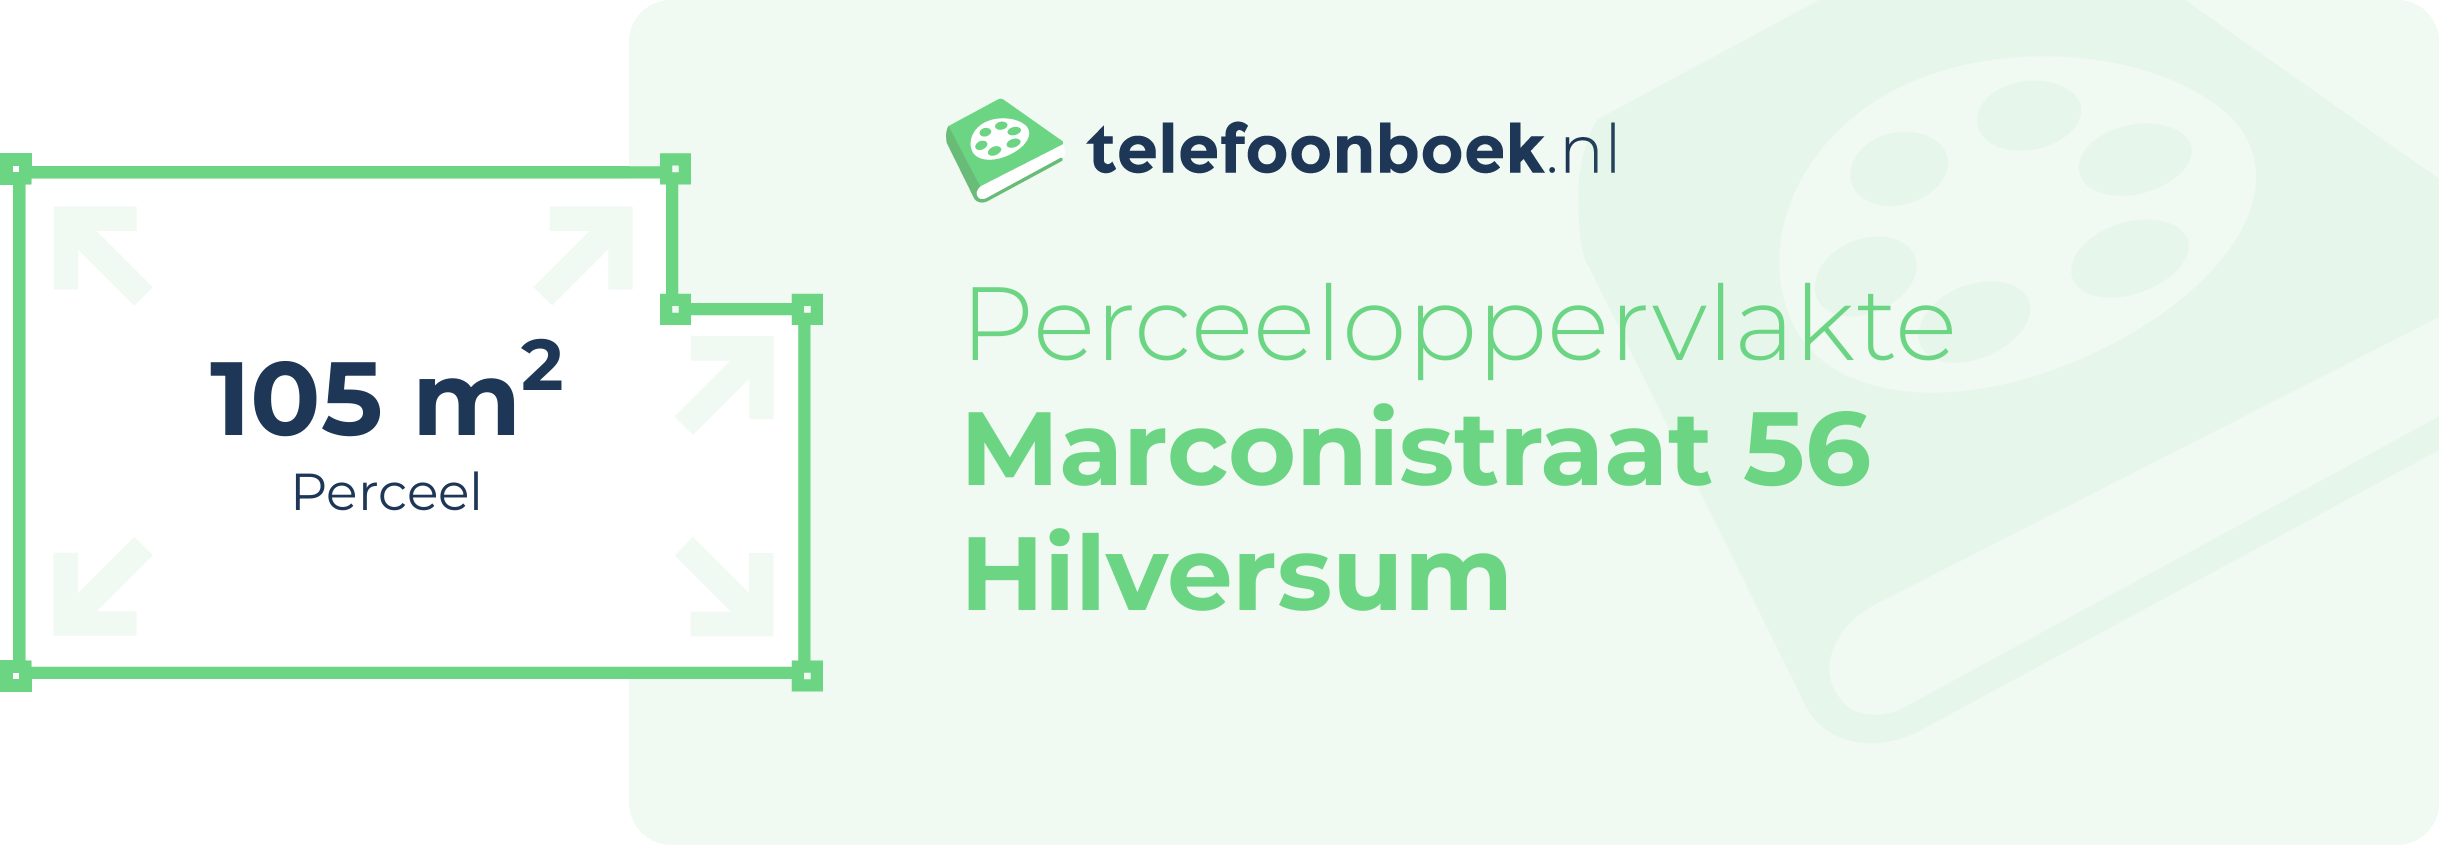 Perceeloppervlakte Marconistraat 56 Hilversum